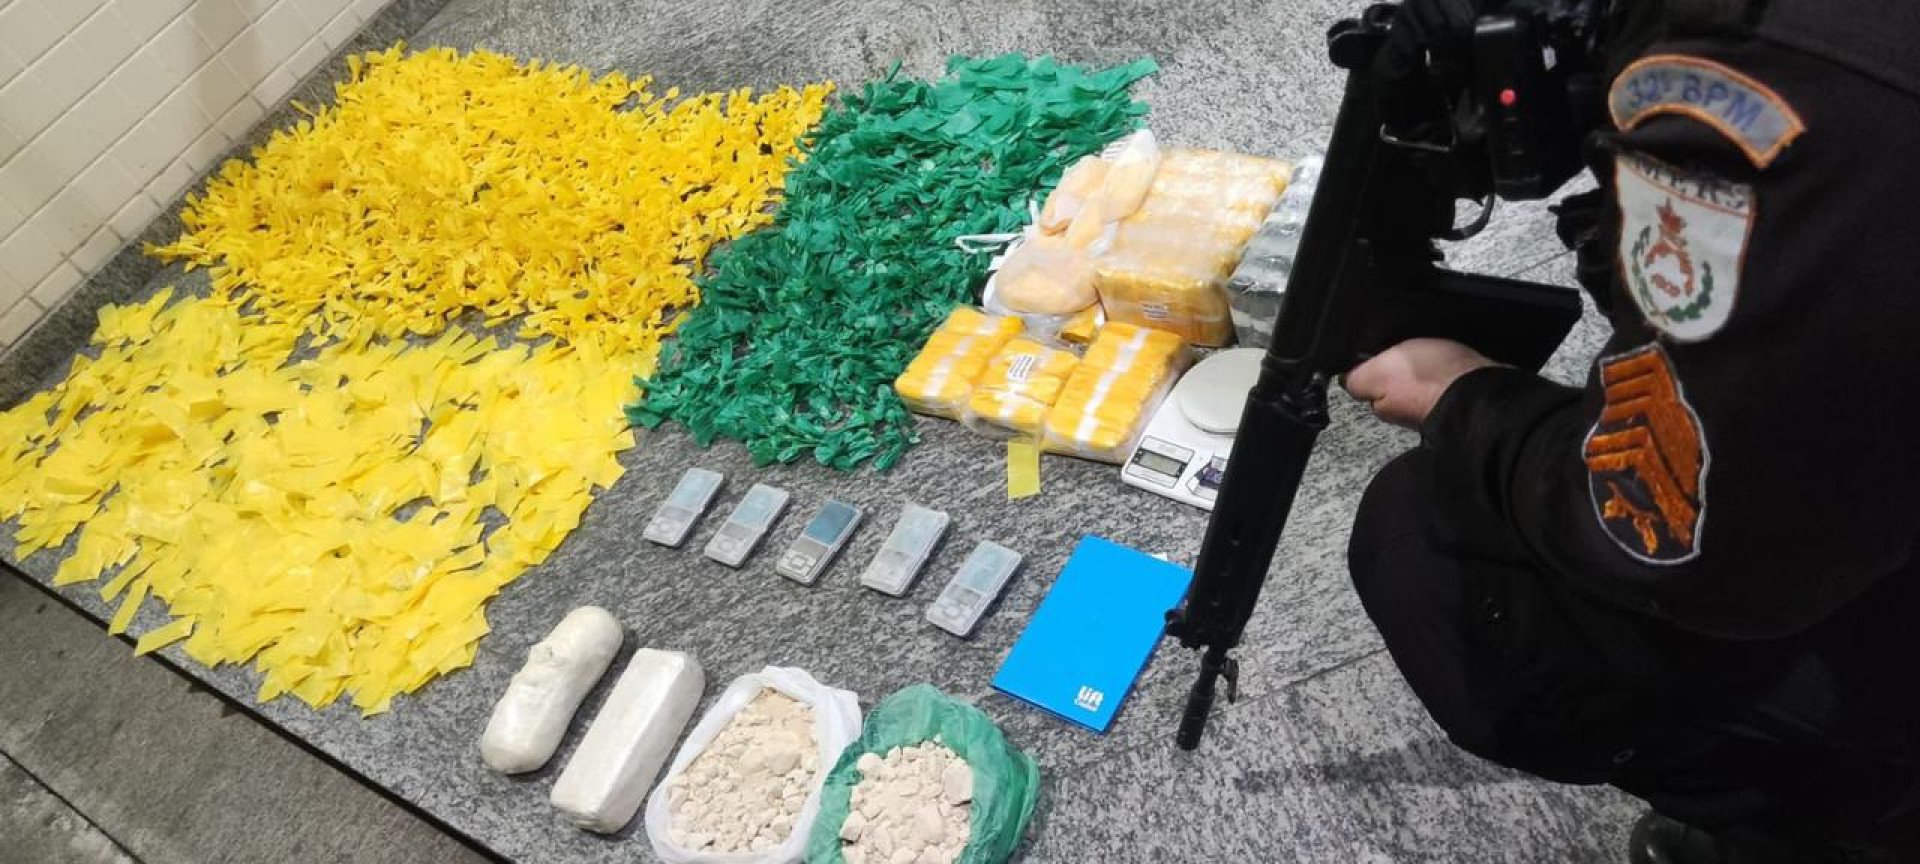 Agentes do 32º BPM apreendem grande quantidade de drogas e materiais usados no preparo de entorpecentes durante operação no bairro Brasília - Foto: Divulgação